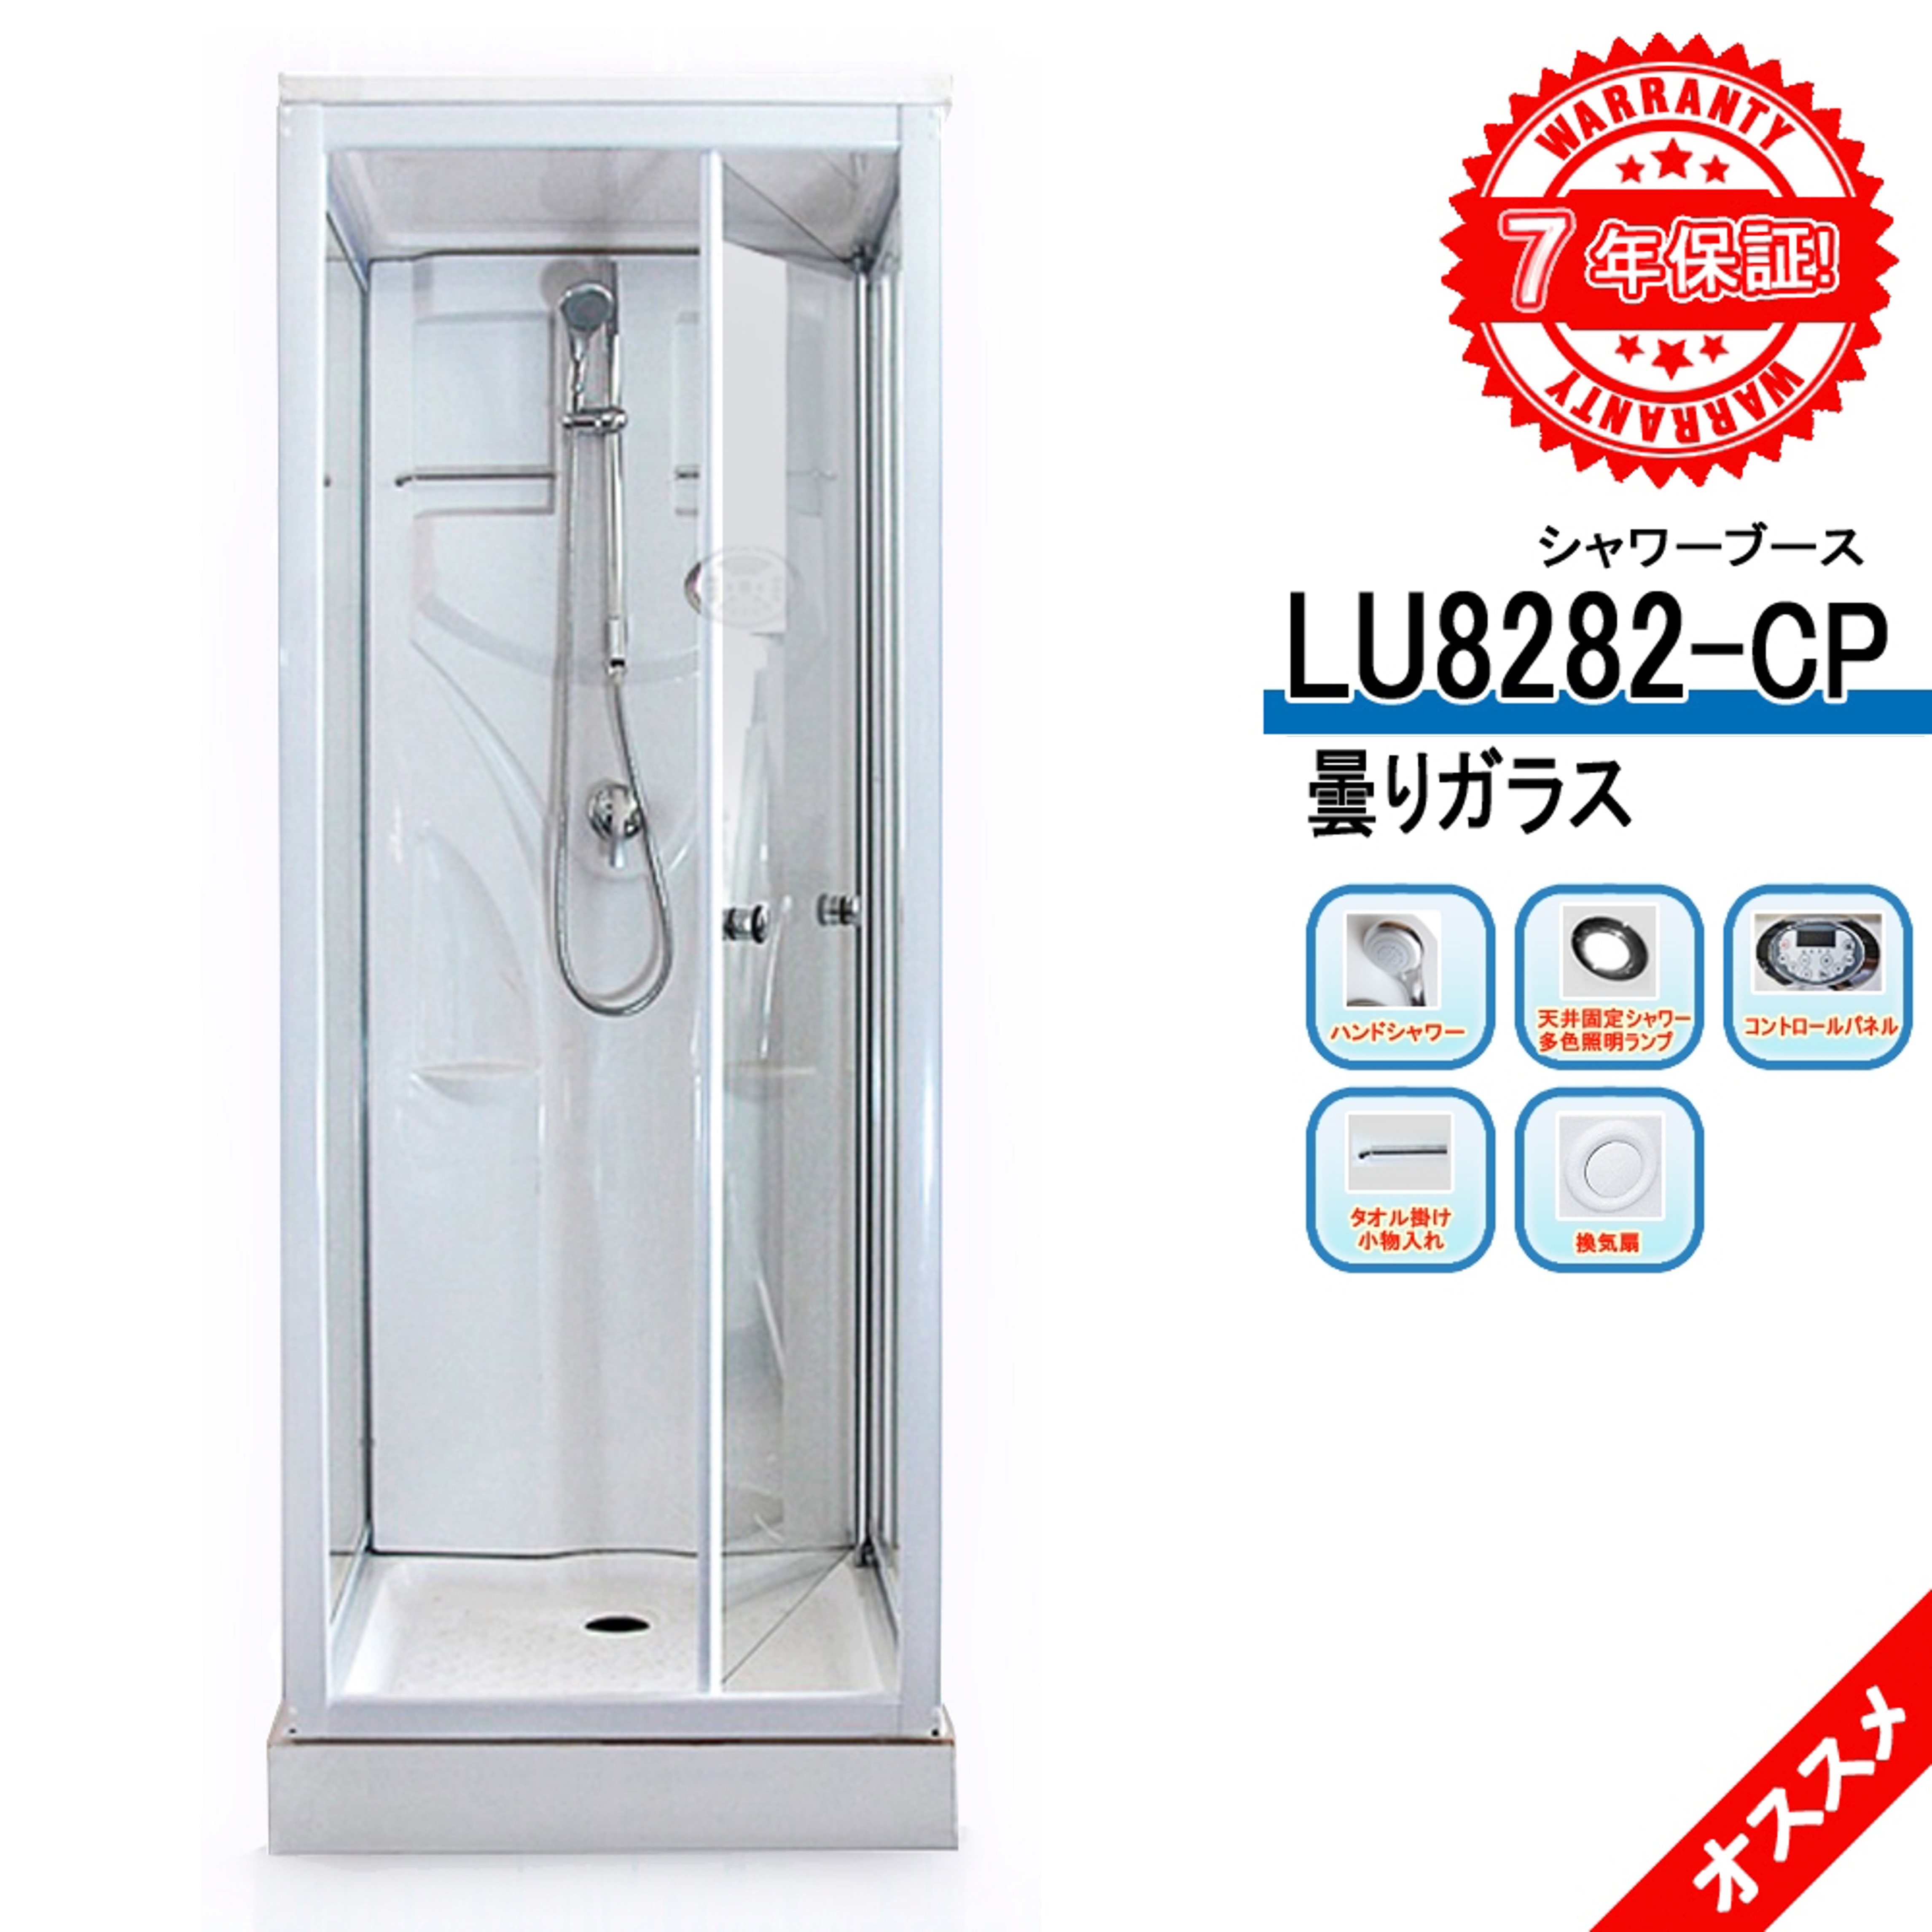 LU8282-CP・曇りガラス ・ 82x82x219h ・ シャワーブース、シャワールーム、シャワーユニット